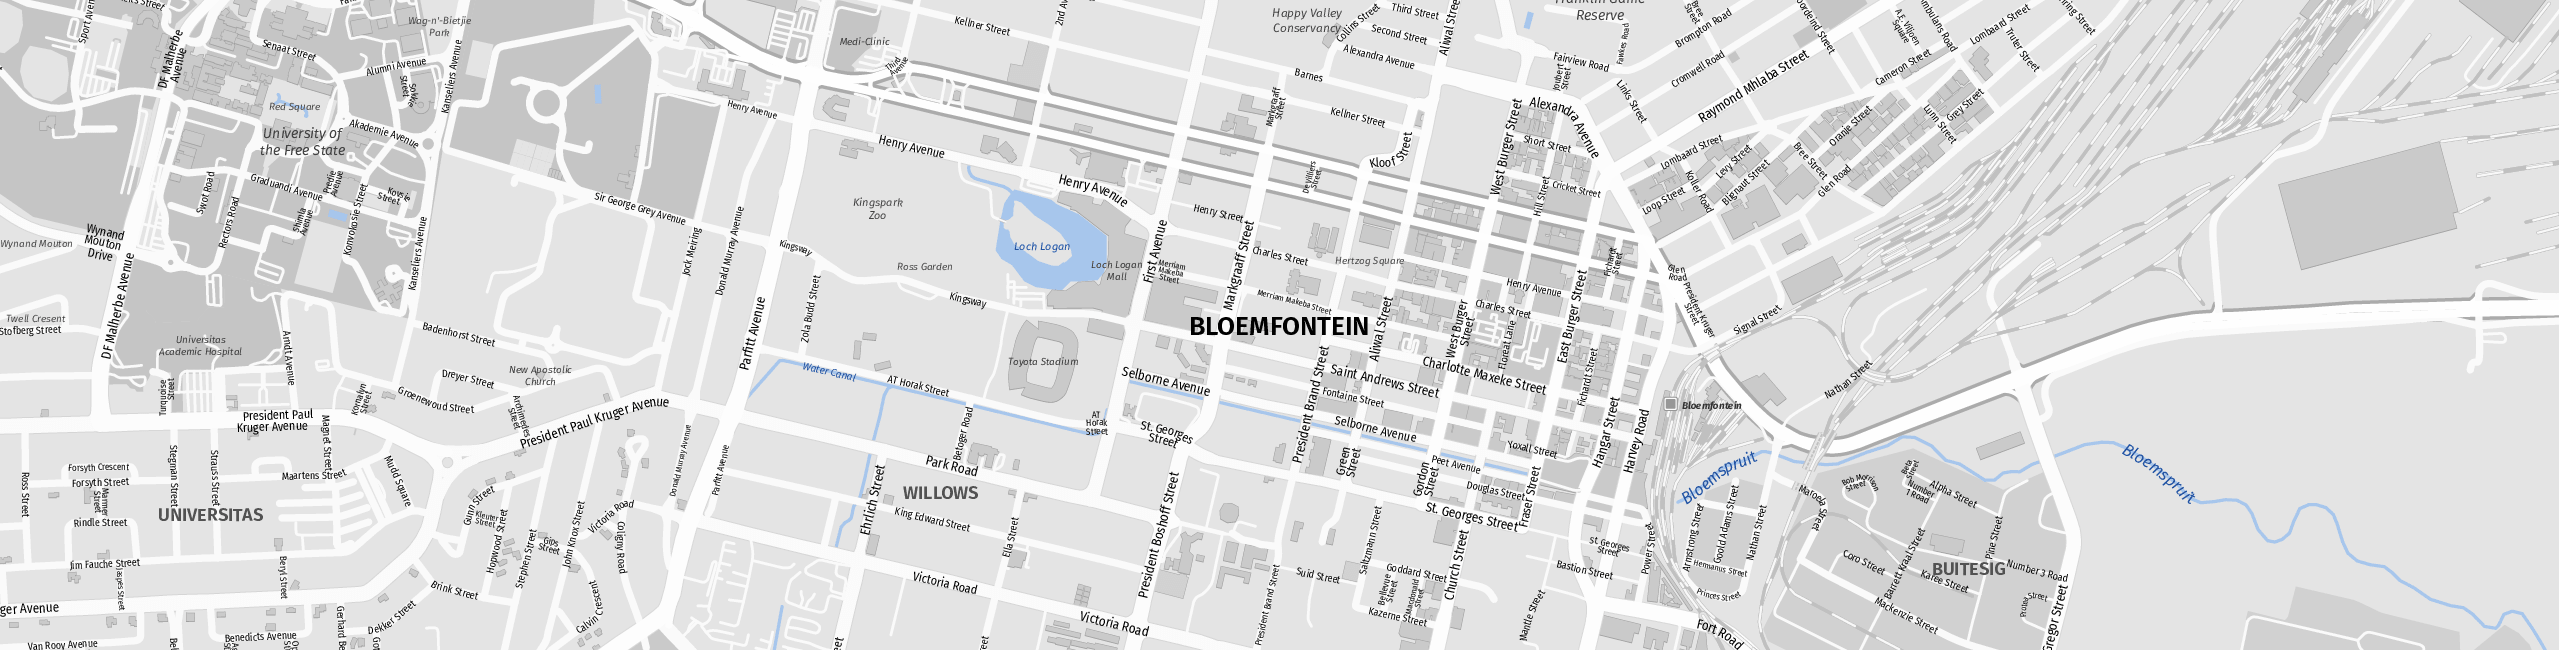 Stadtplan Bloemfontein zum Downloaden.